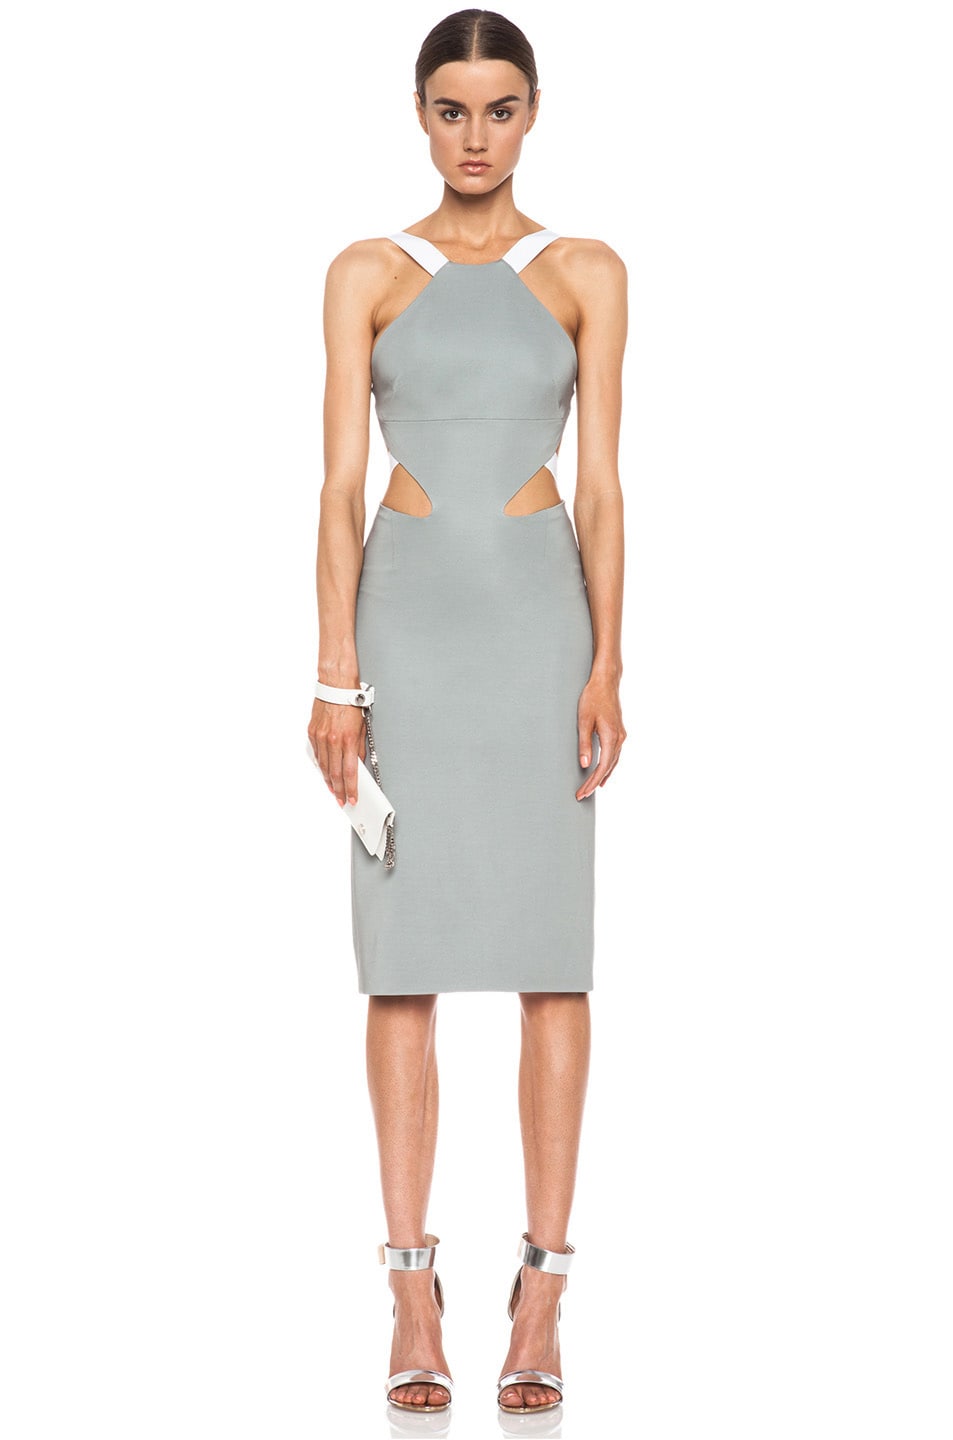 Cushnie et Ochs Viscose-Blend Halter Dress in Grey & White | FWRD